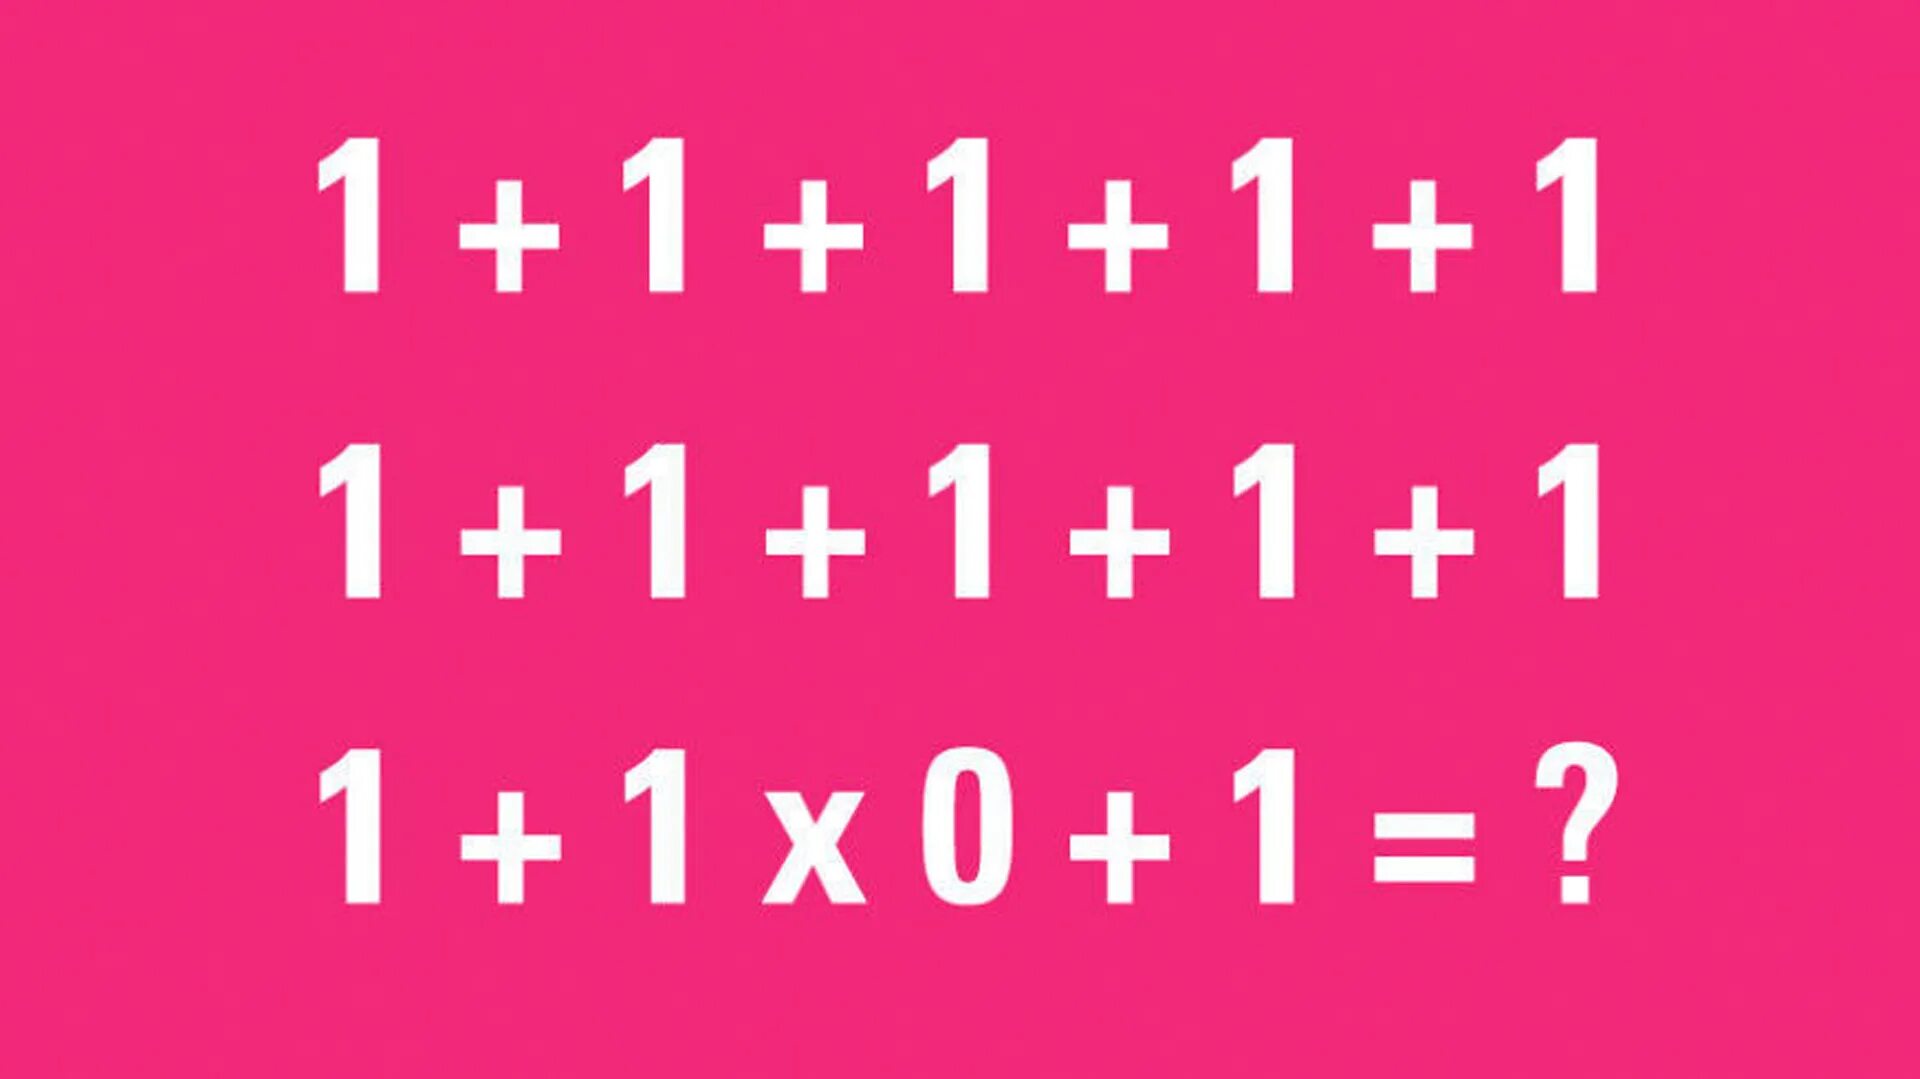 Https 1.1 1.1 apk. Загадка 1+1+1+1. 90 Людей не могут решить эту задачу. Головоломка 1+1+1+1+1+1+1+1+1+1+1+1*0+1 ответ. Загадки на логику с ответами 1+1+1+1+1 1+1 *0.